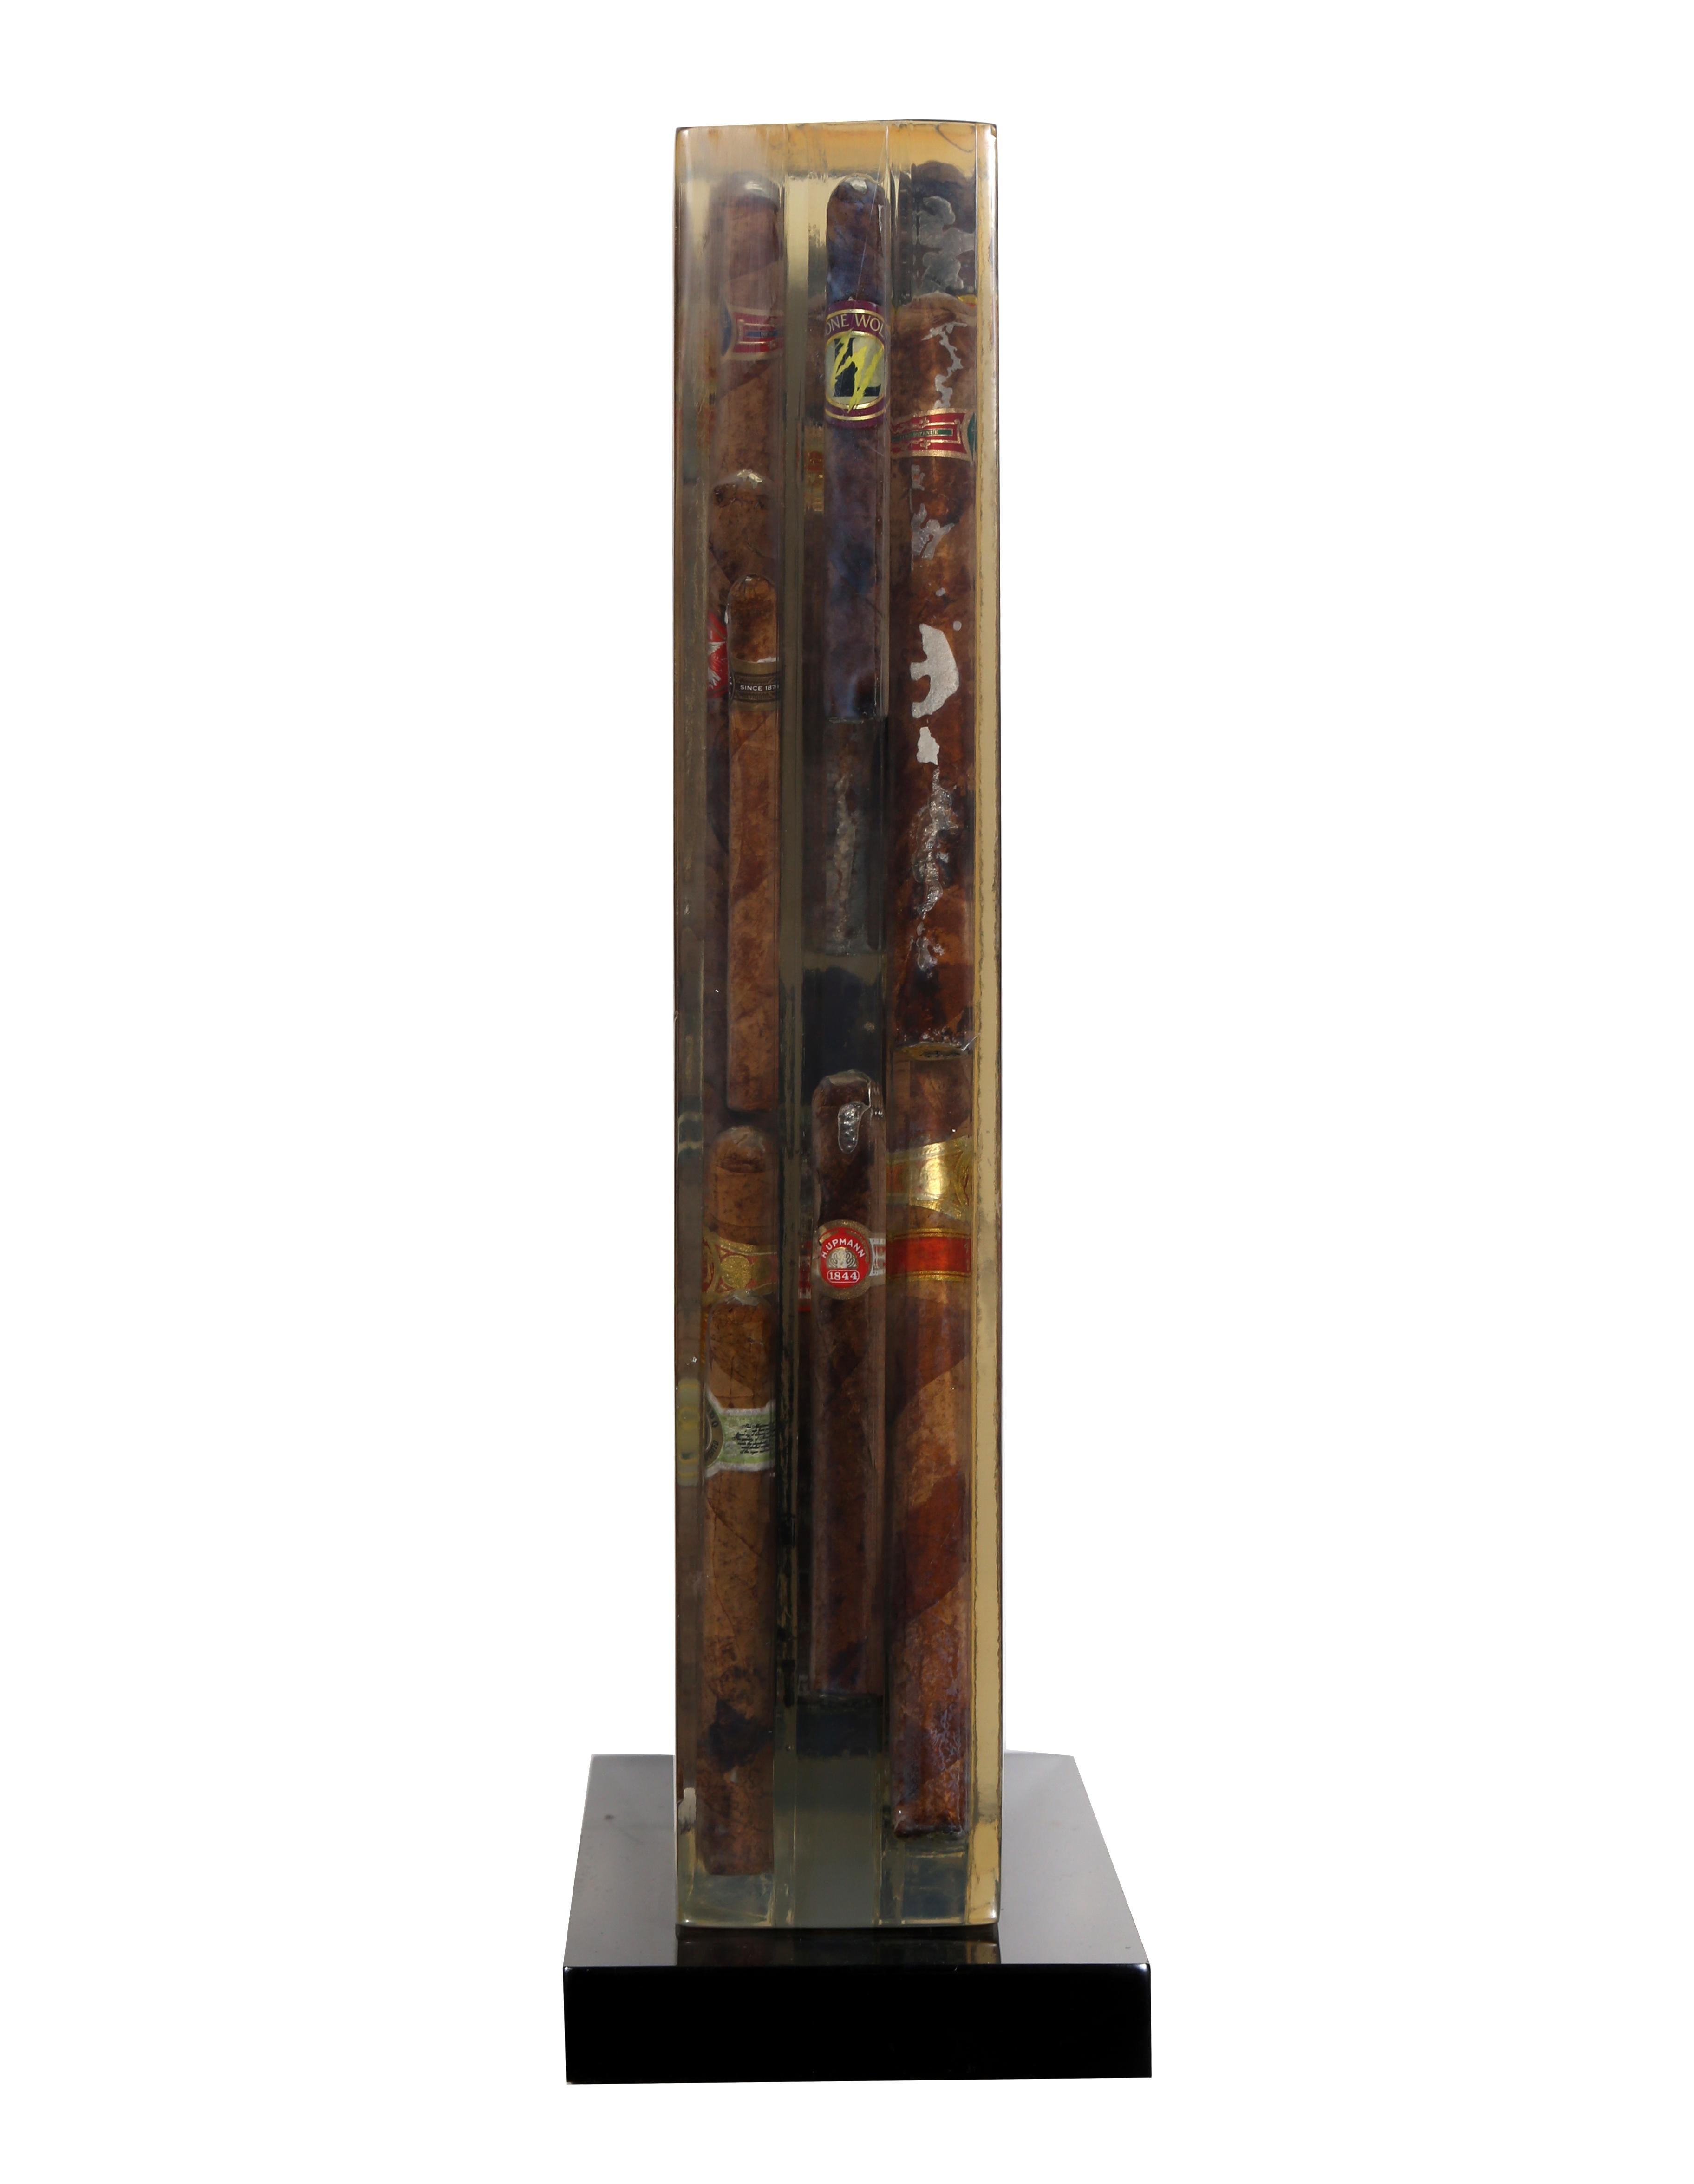 Eine einzigartige Skulptur des französischen Künstlers Arman. Diese Sammlung erstklassiger Zigarren, die in durchsichtigem Harz eingeschlossen sind, ist ein zentrales Werk aus Armans 